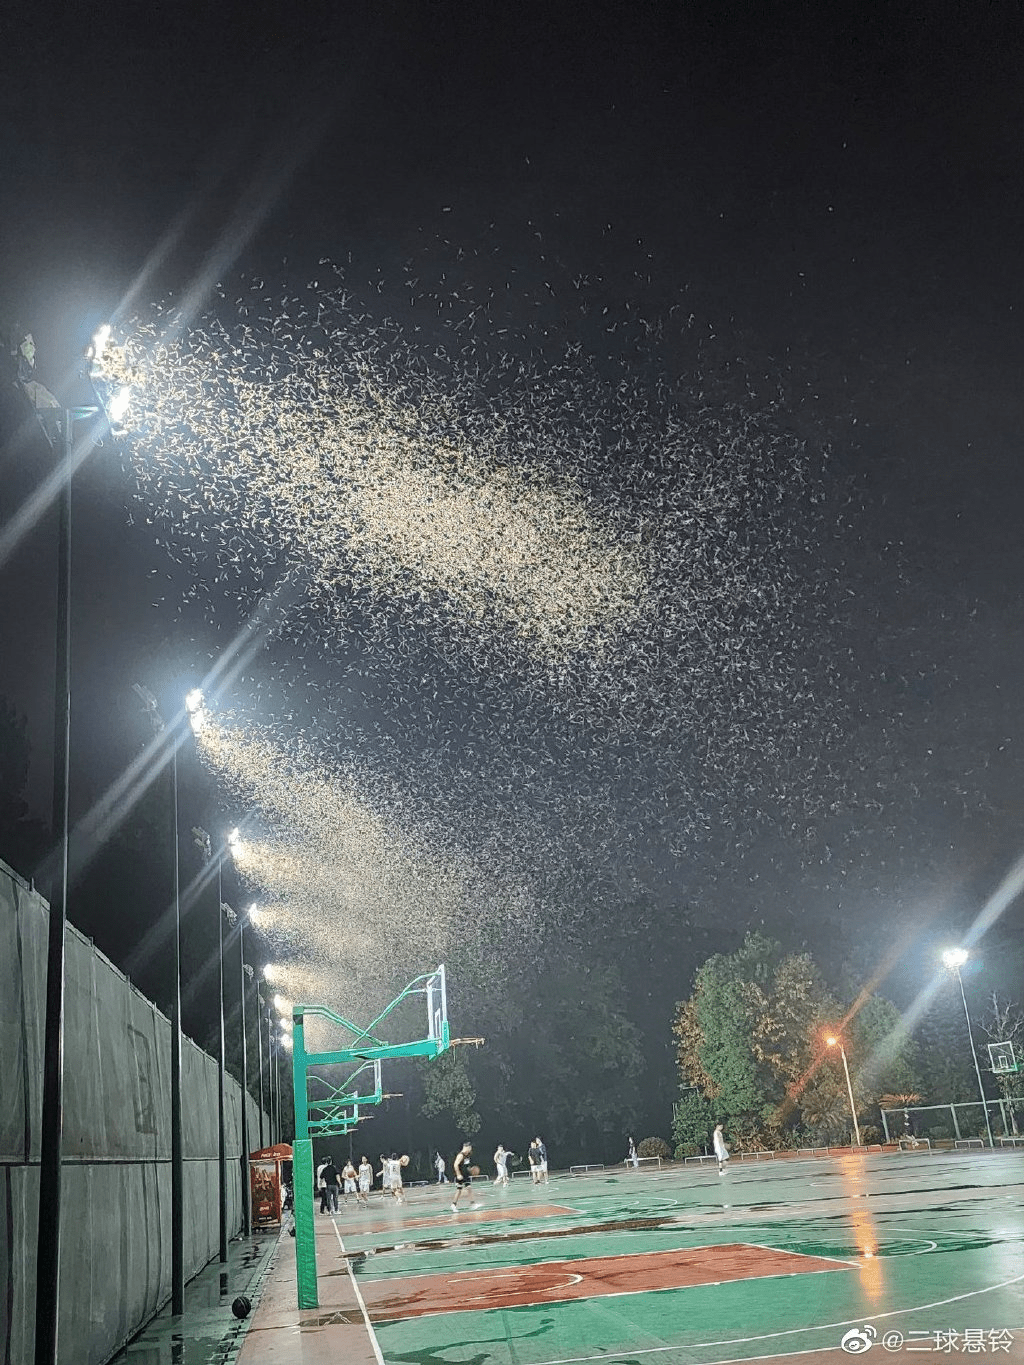 上海網民分享在戶外的燈具下大量的白蟻在飛舞。